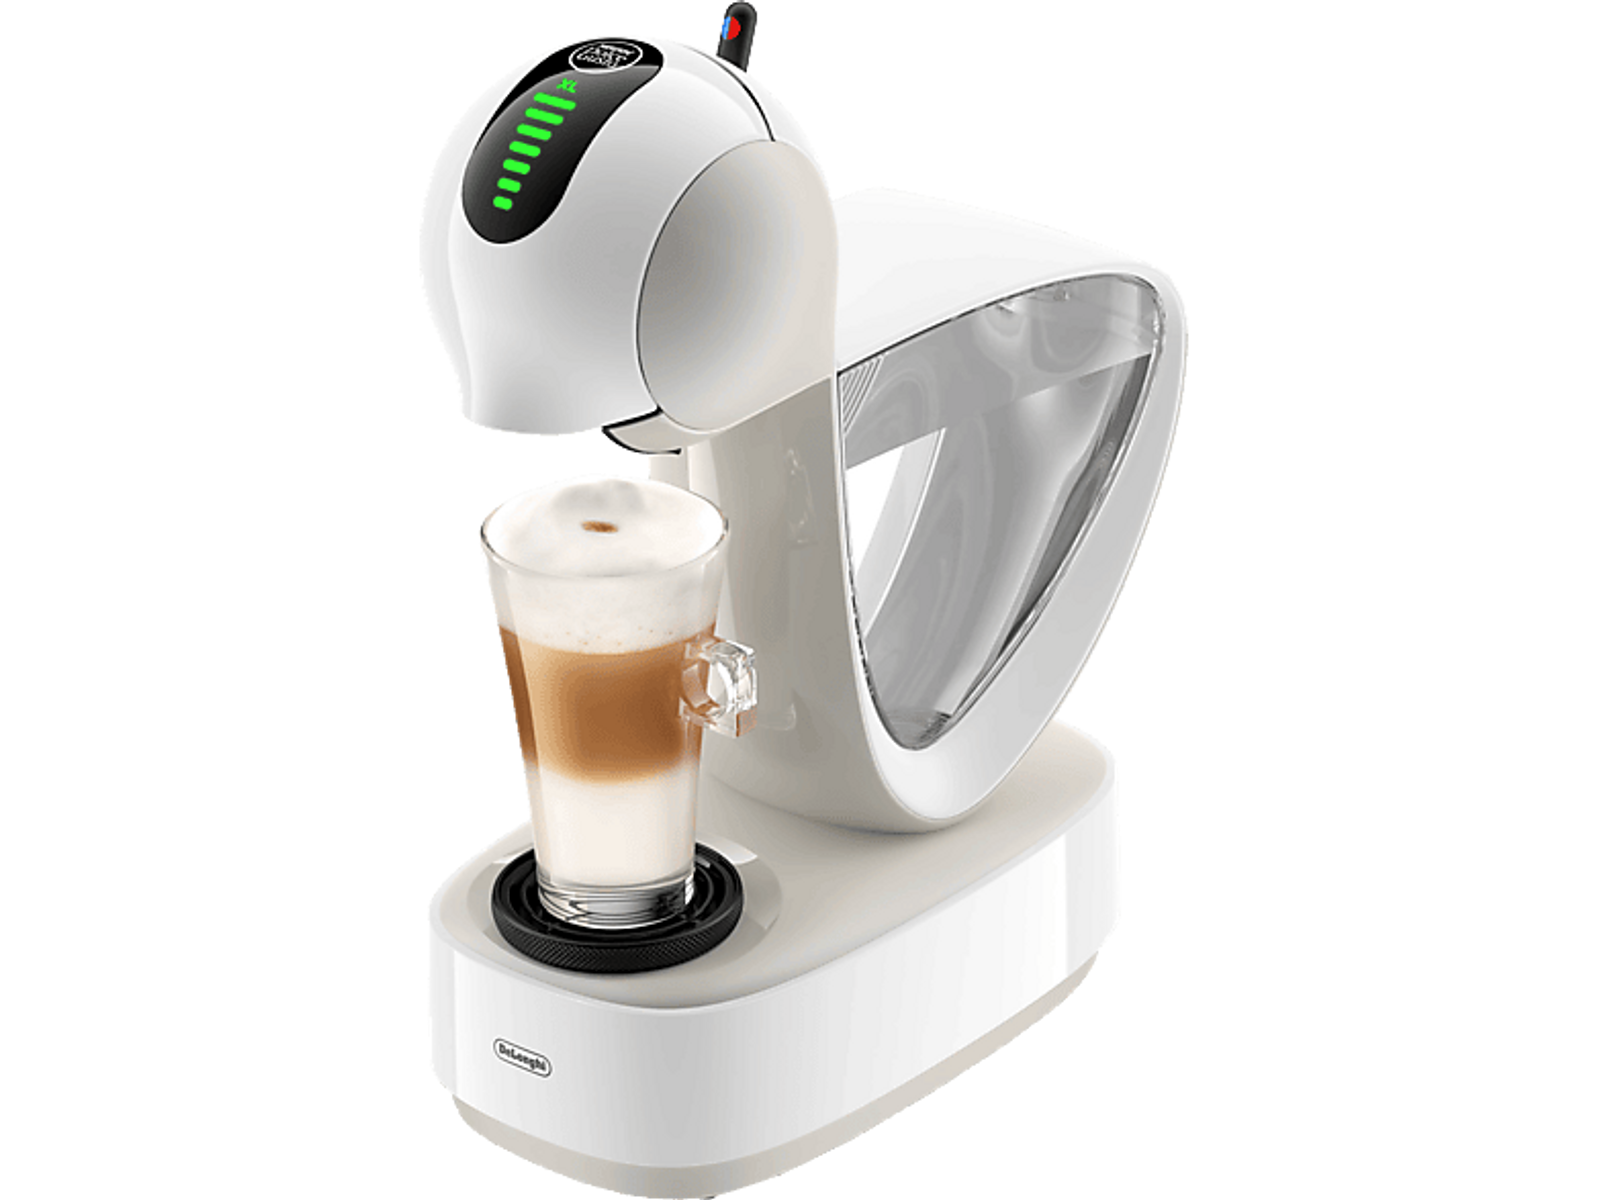 DE LONGHI Weiß Kaffeekapselsystem EDG268.W